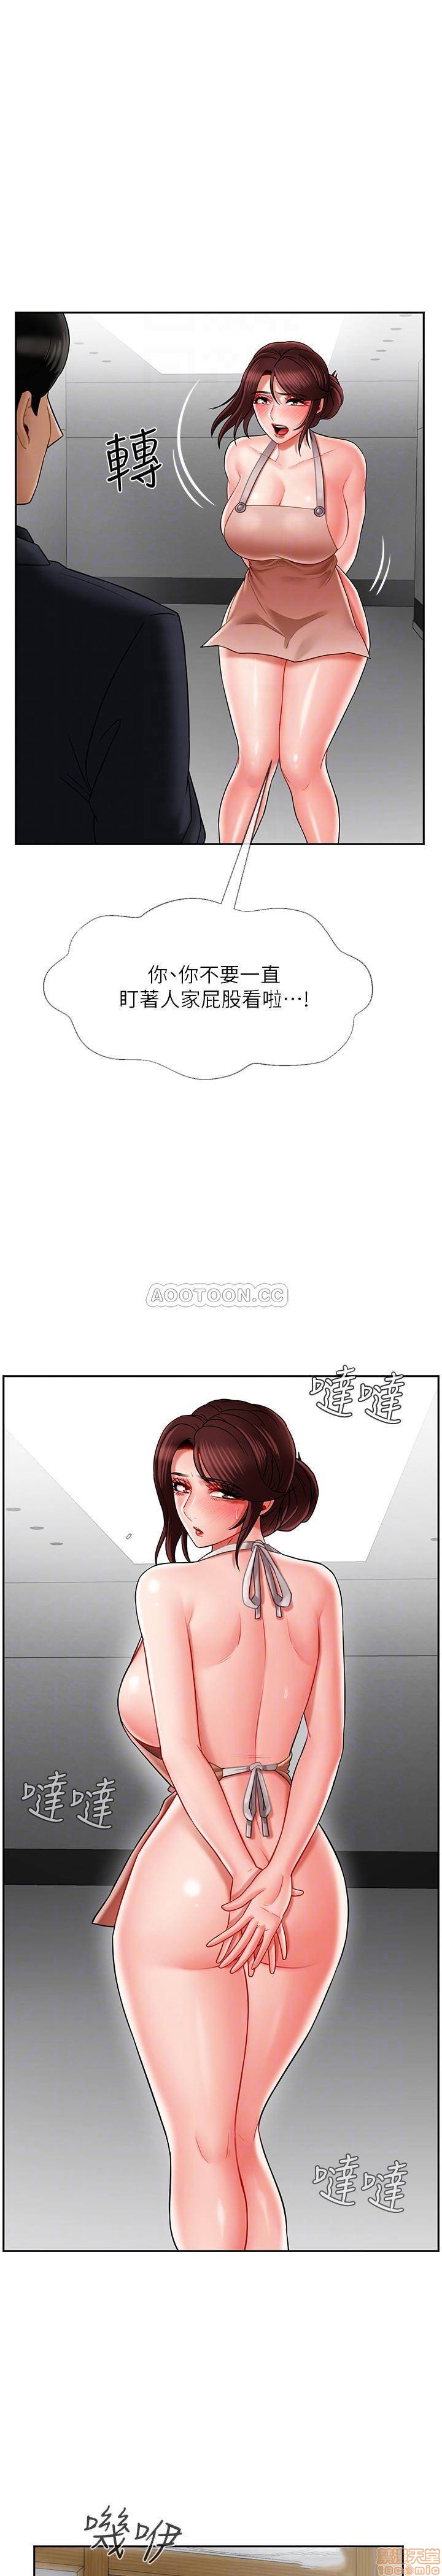 《坏老师》漫画 第17话 - 雅萱…妳这里好美